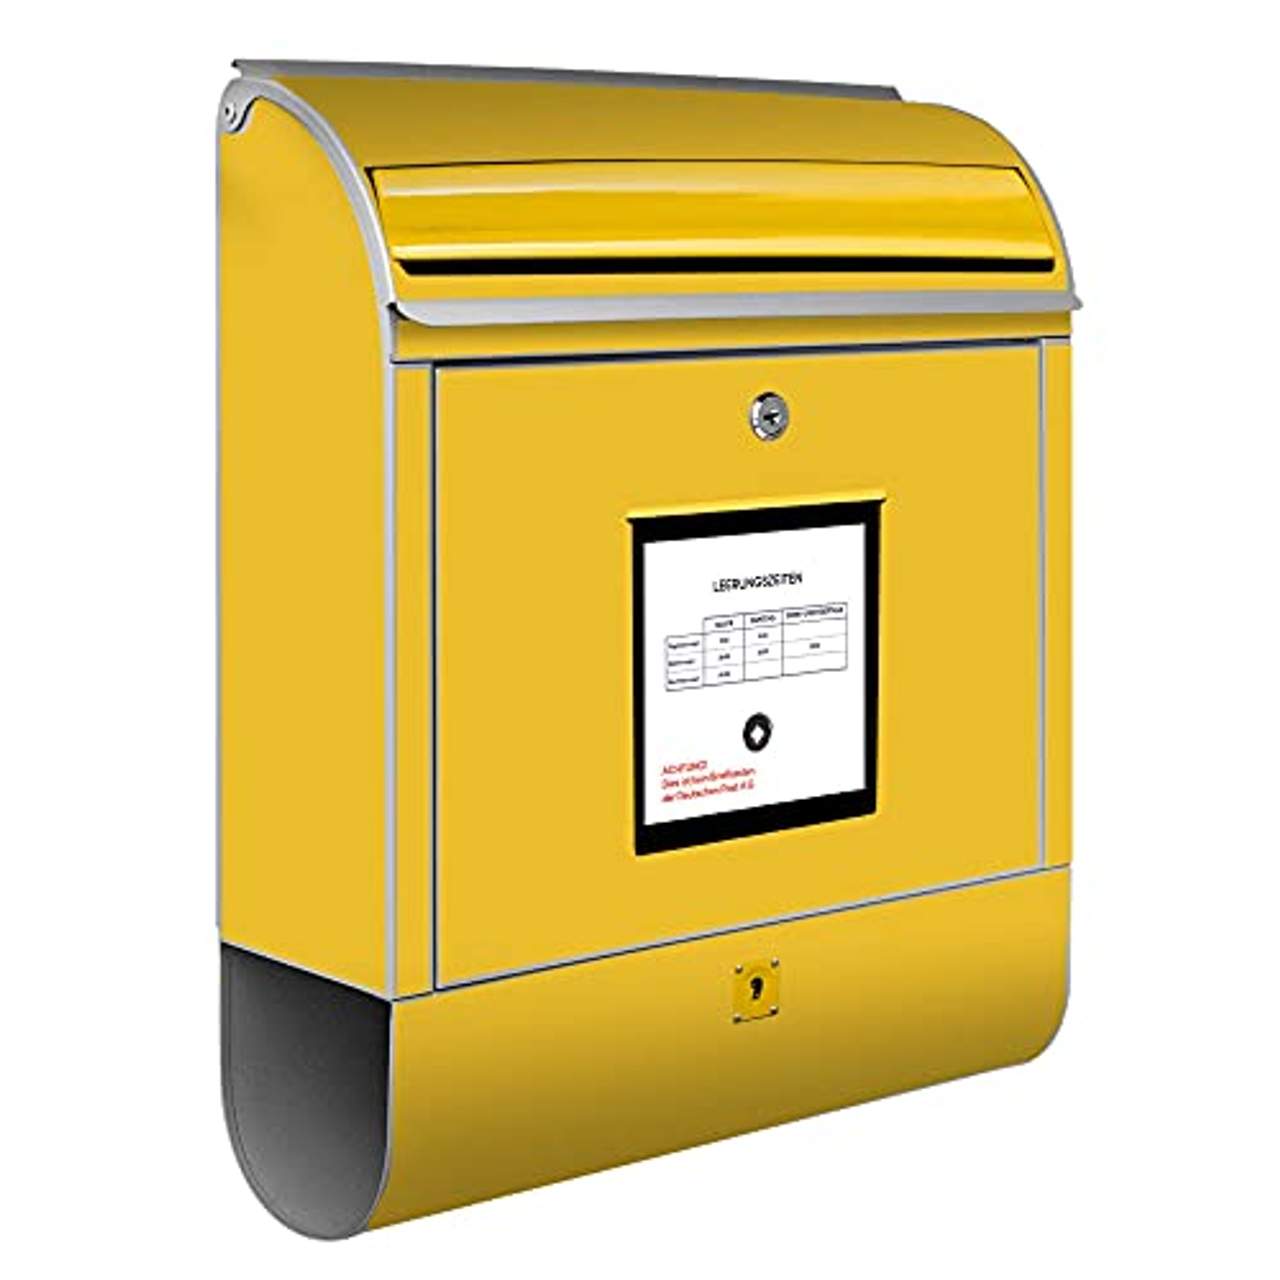 Banjado Design Briefkasten mit Motiv Briefkasten Gelb